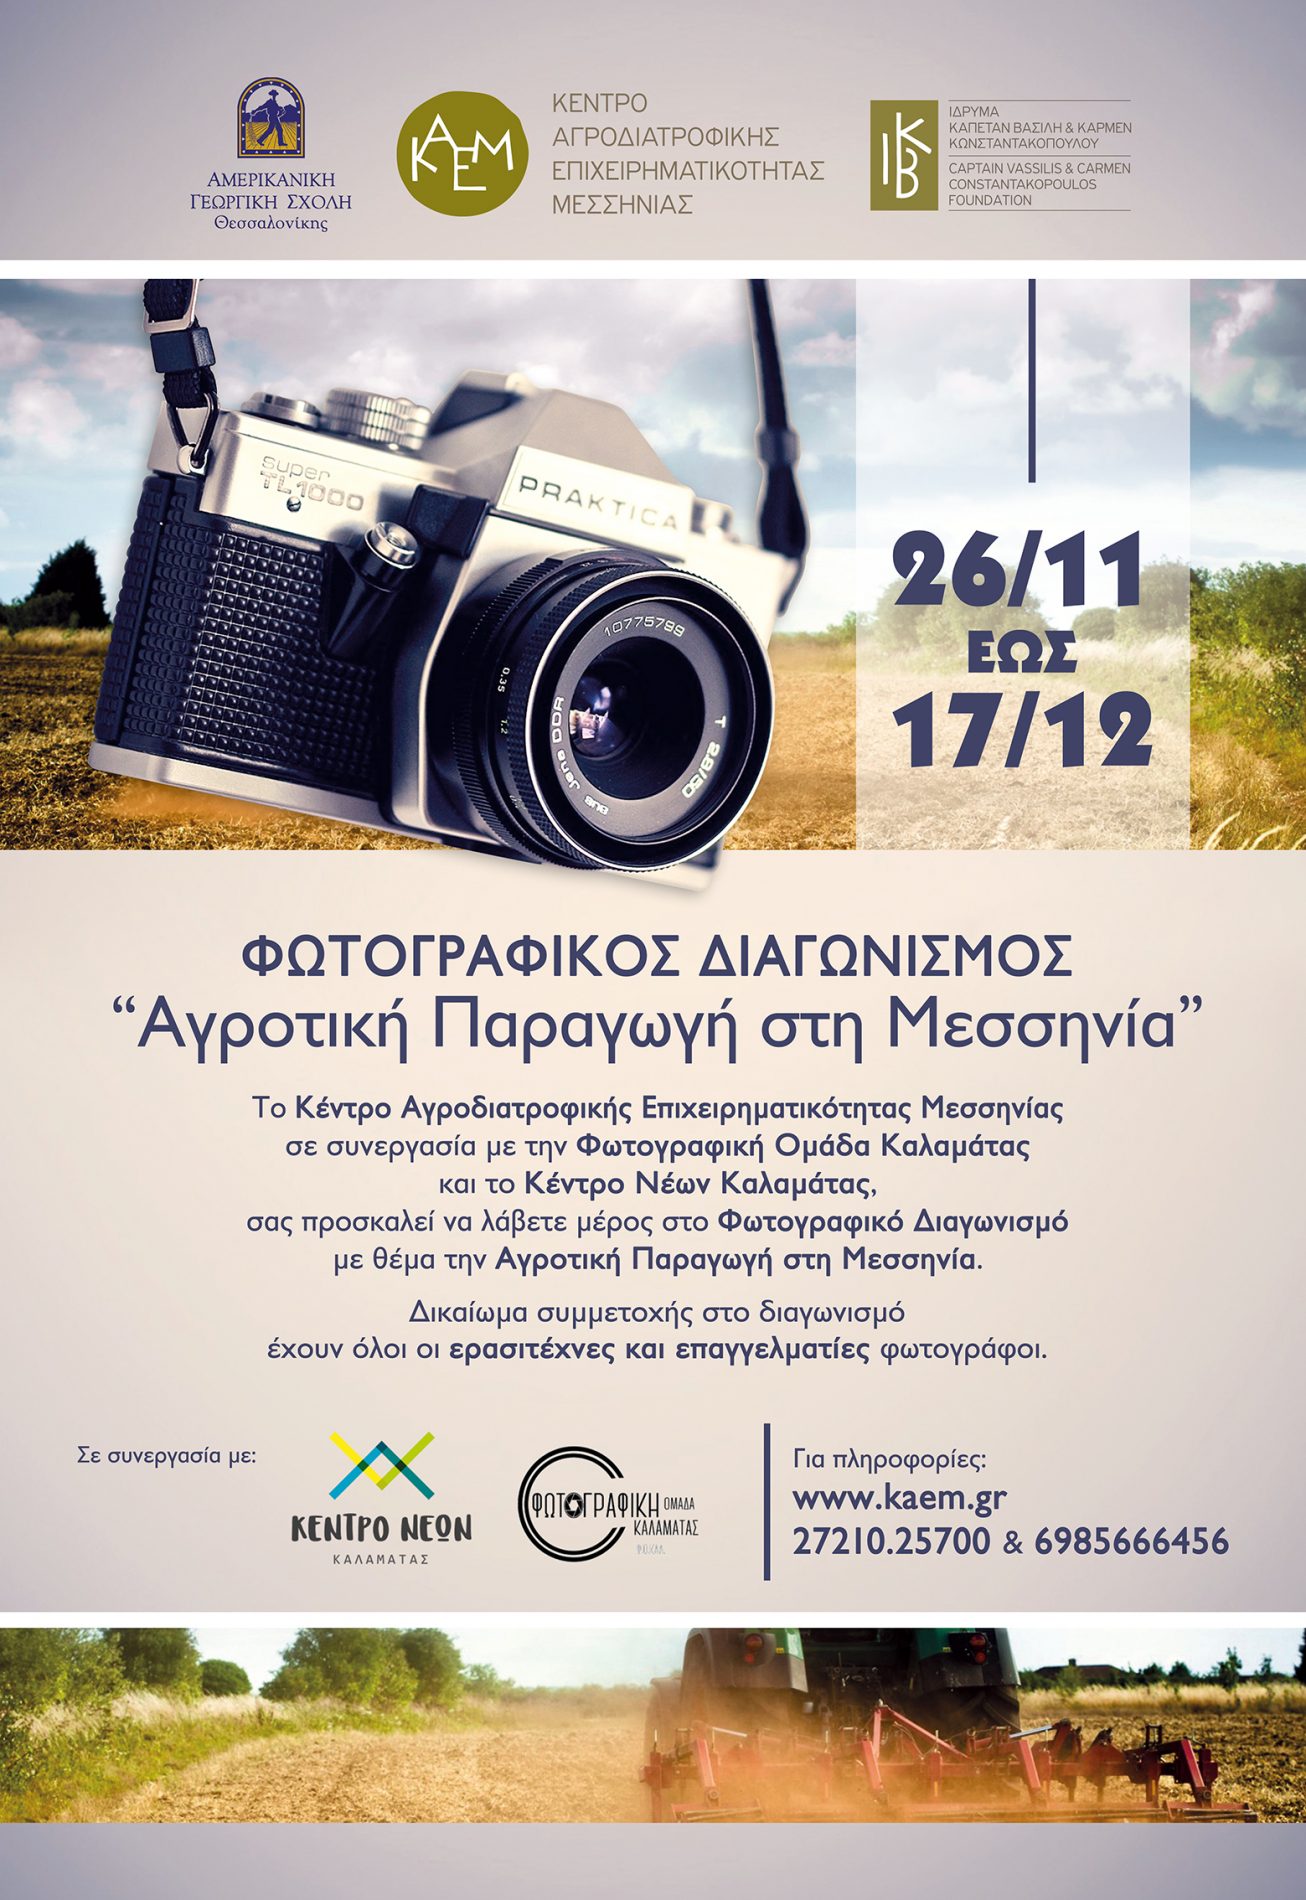 Διαγωνισμός Φωτογραφίας από το Κέντρο Αγροδιατροφικής Επιχειρηματικότητας Μεσσηνίας